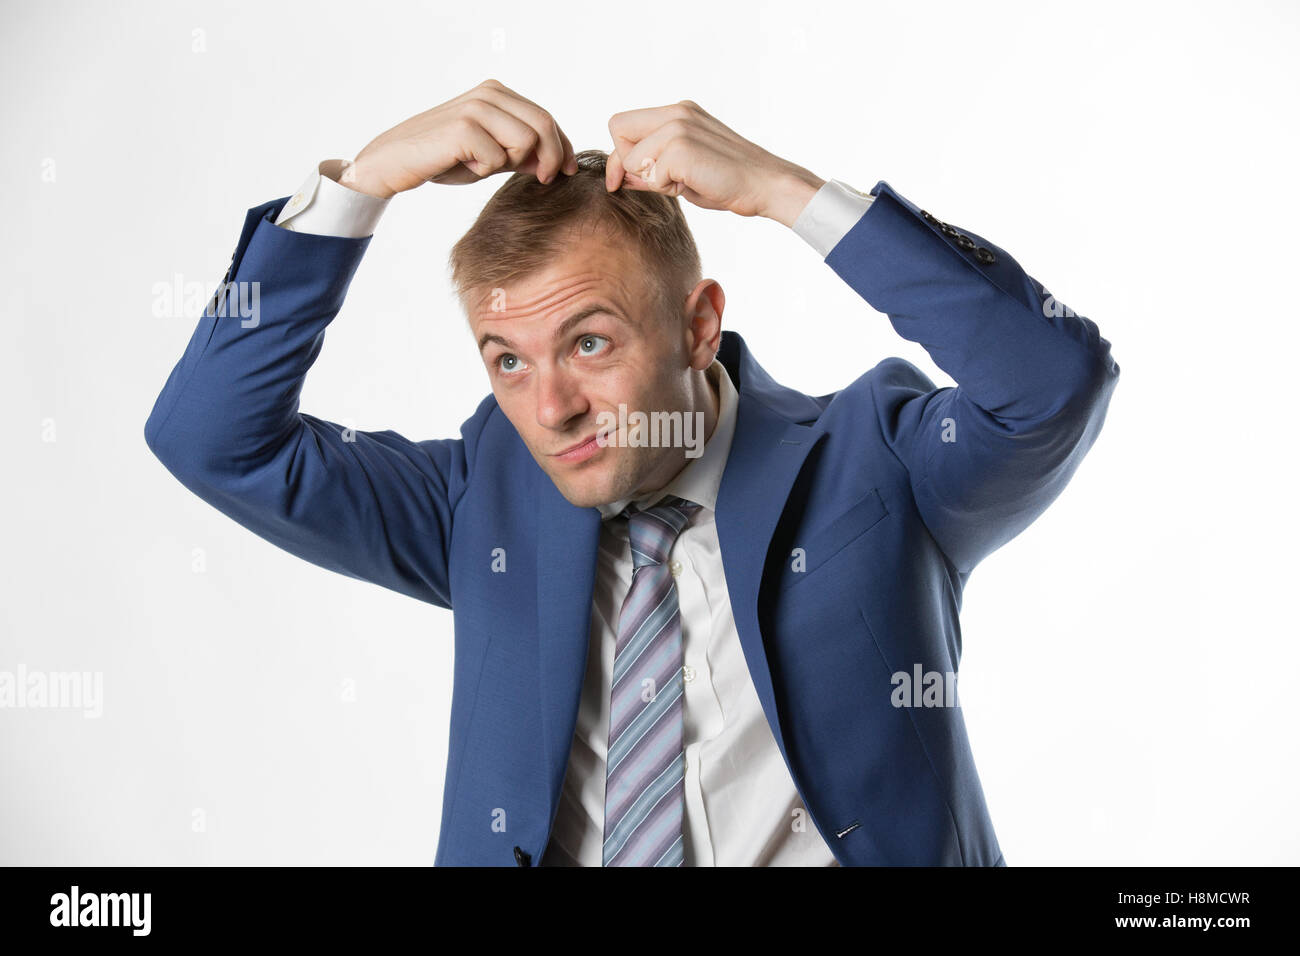 Businessman checking his hair indicating hair loss Stock Photo